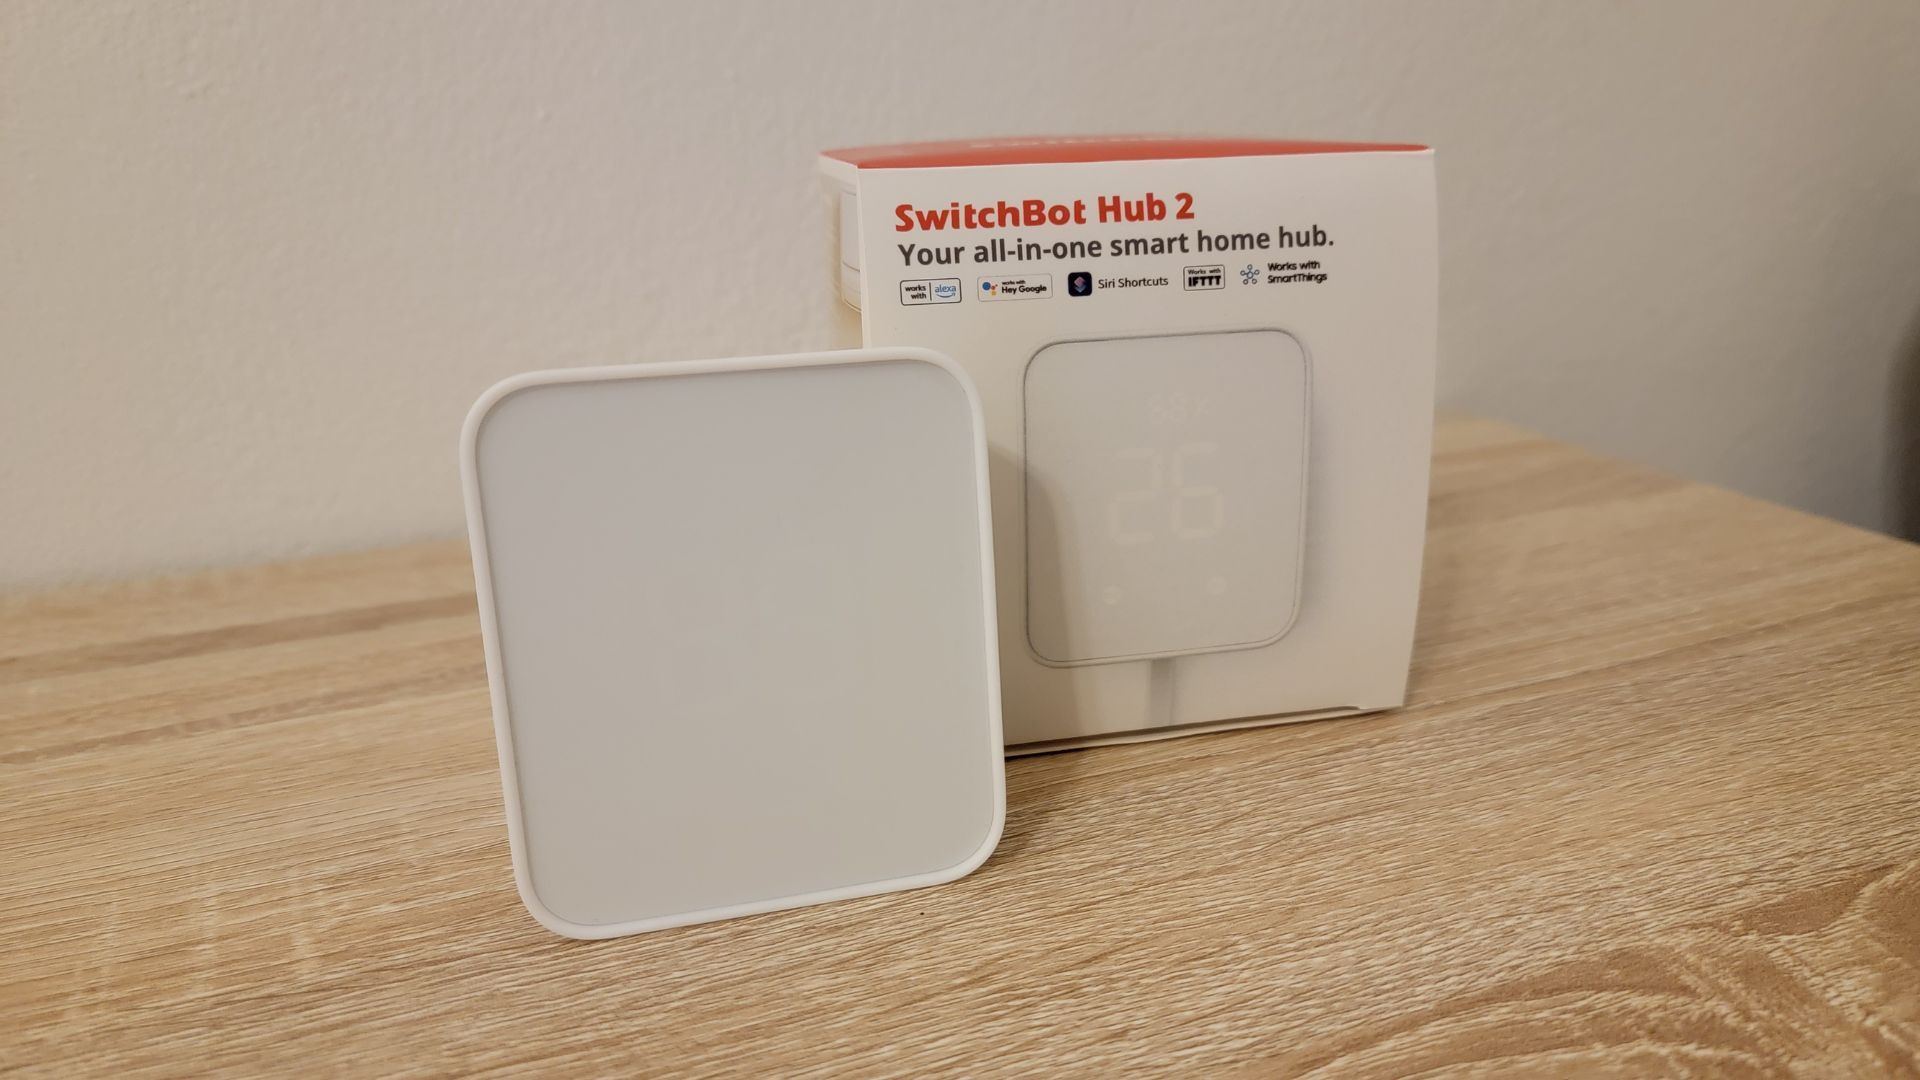 SwitchBot Hub 2, Smart Wi-Fi Hygrometer, Supports Matter